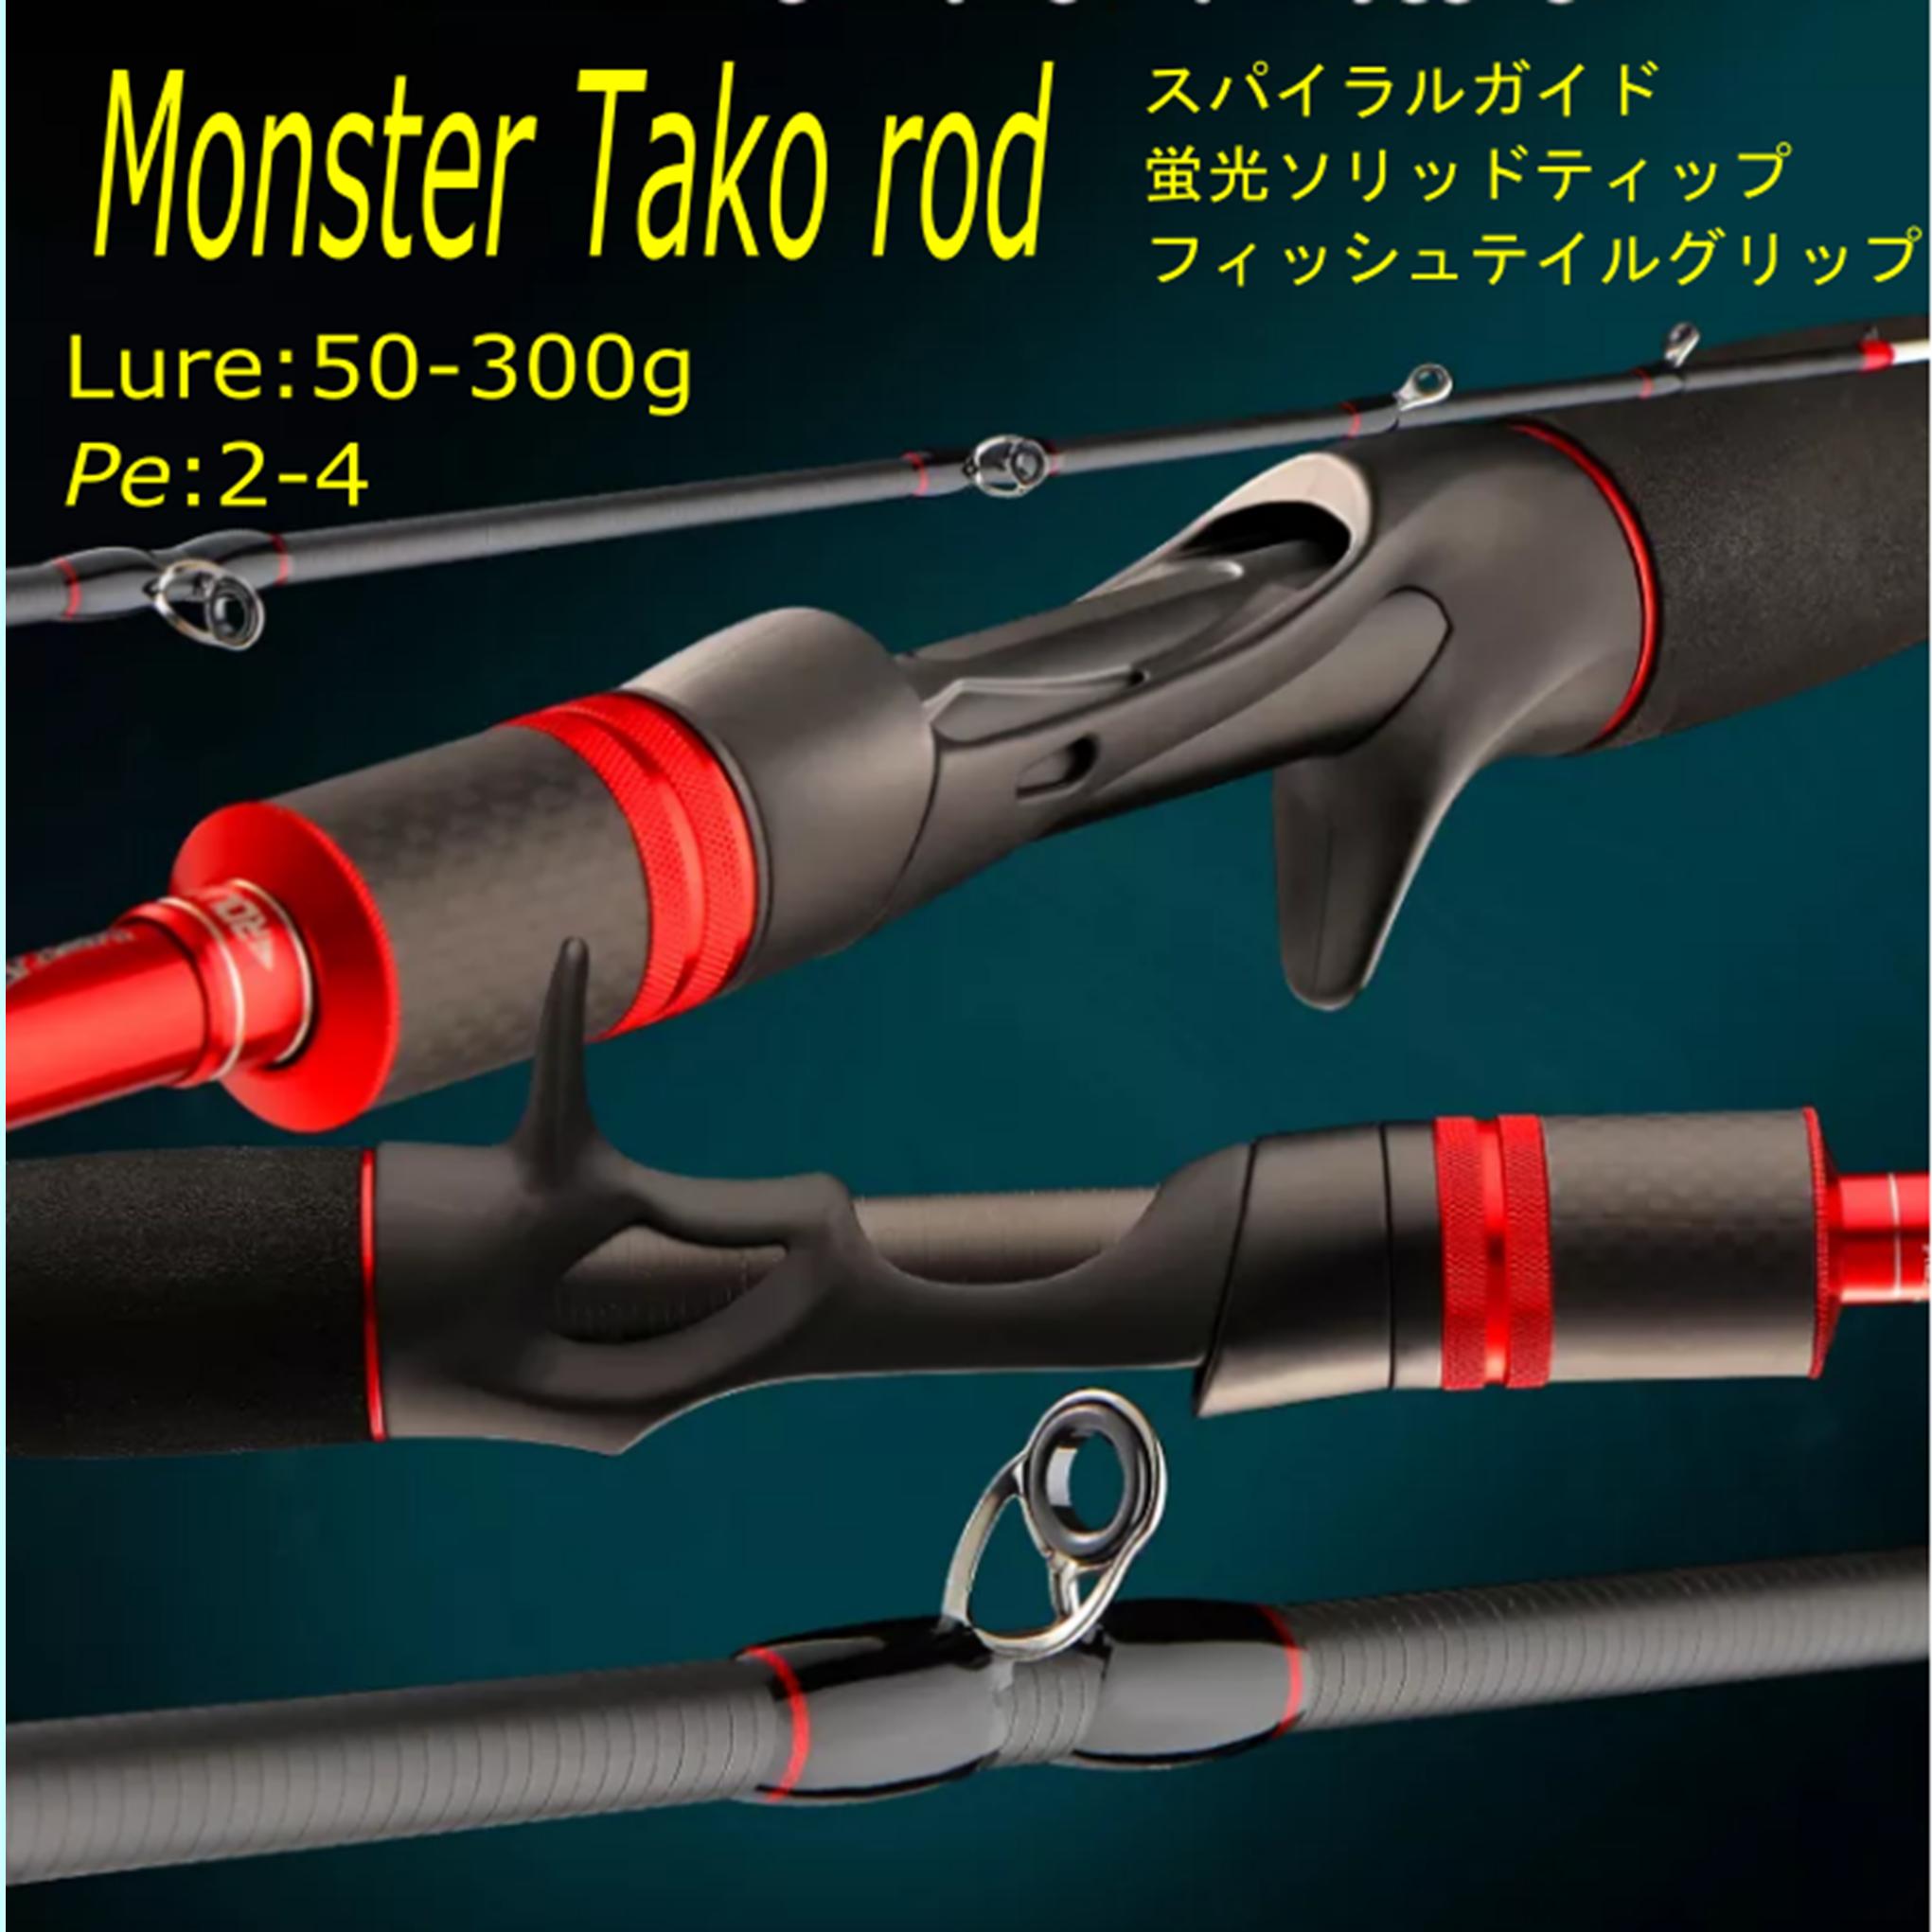 6 ft осьминог * длинный меч рыба * синий предмет * jigging для bait rod 